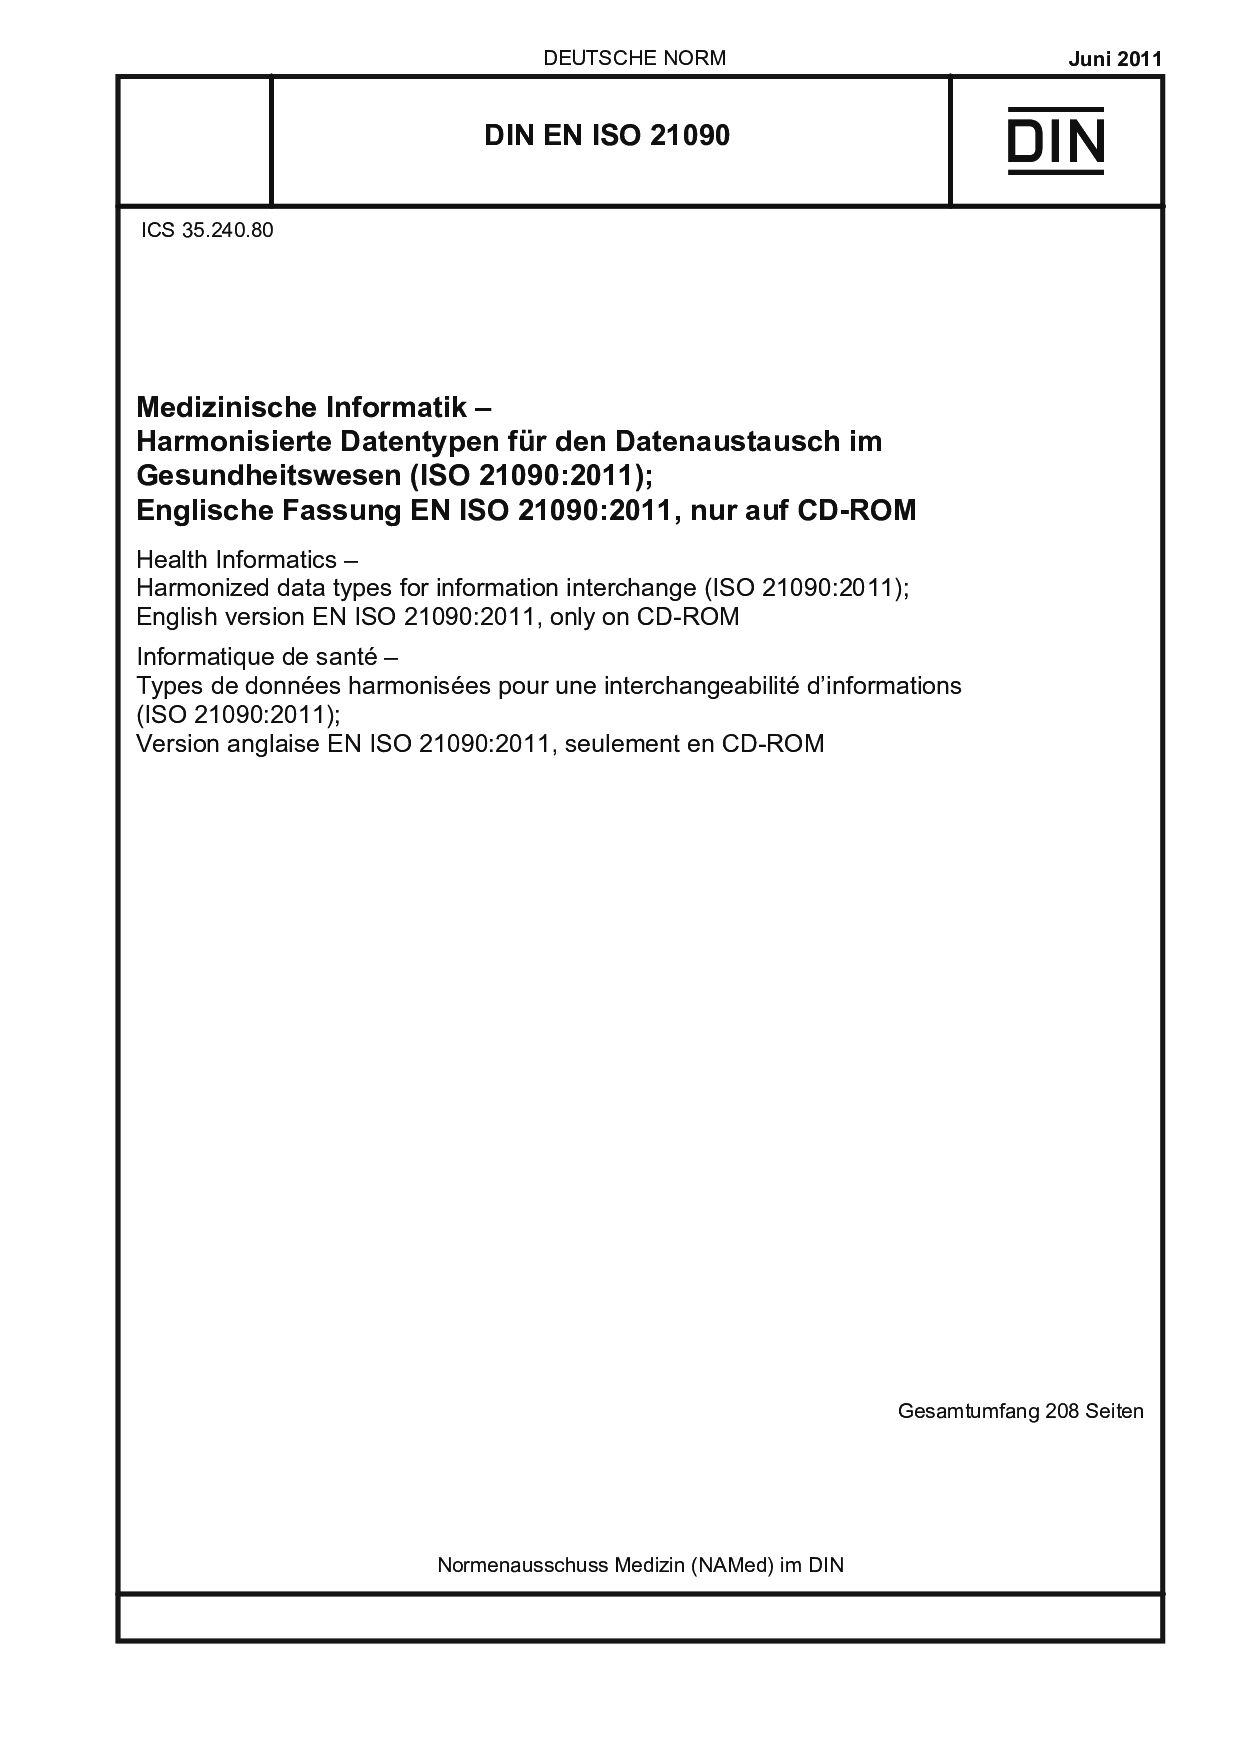 DIN EN ISO 21090:2011封面图